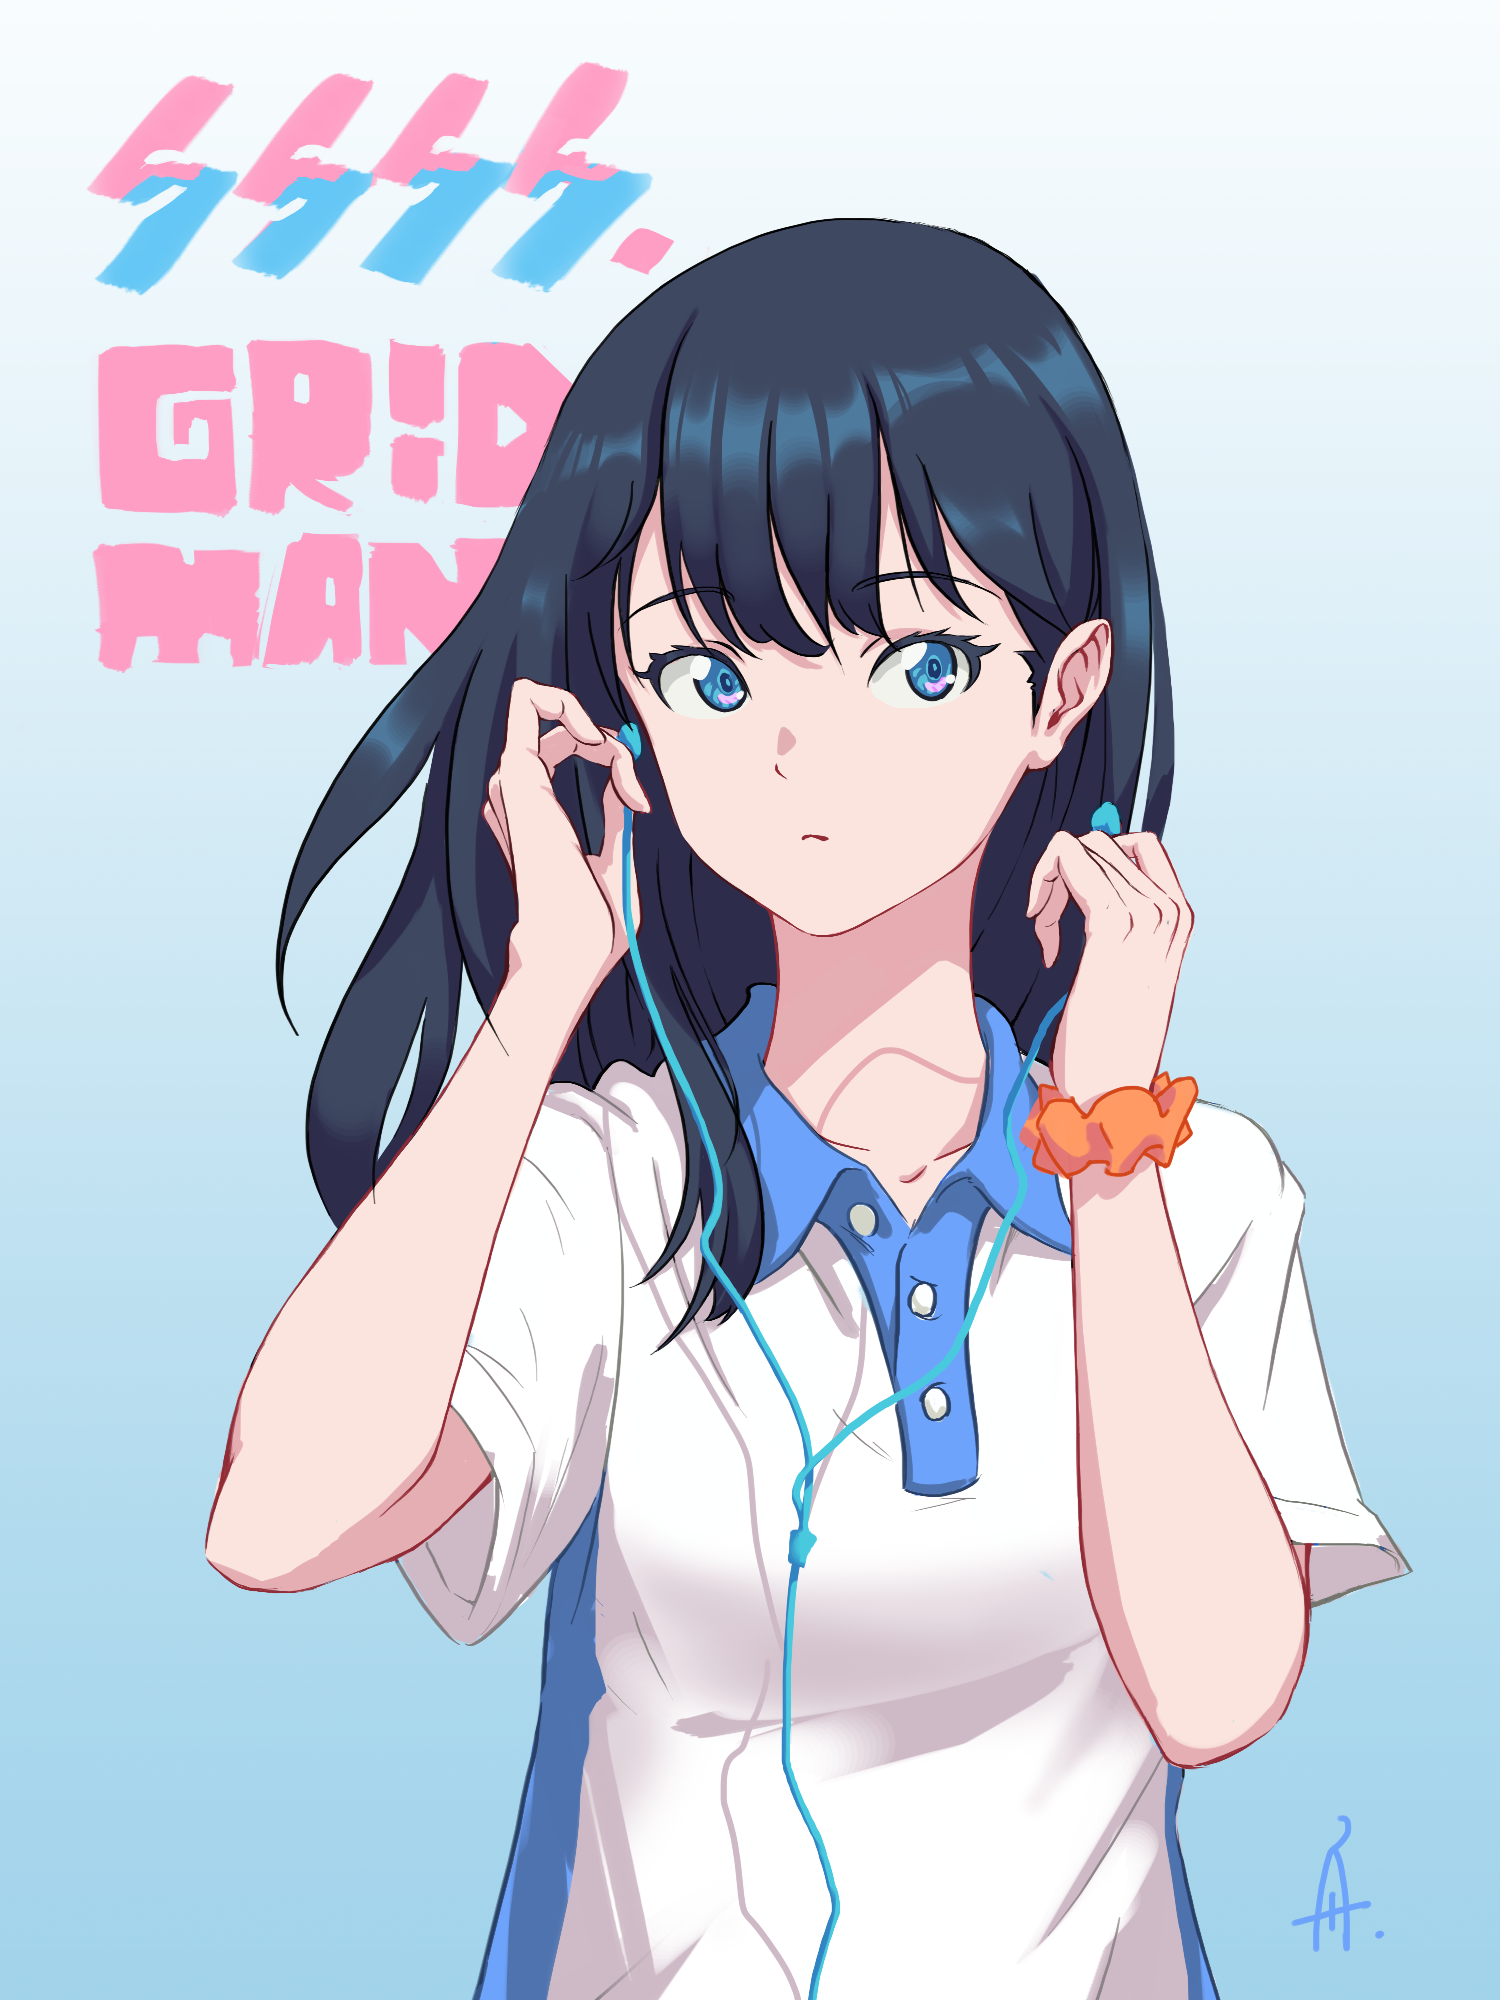 Anime 1500x2000 anime anime girls SSSS.GRIDMAN Takarada Rikka long hair dark hair alternate costume artwork digital art fan art